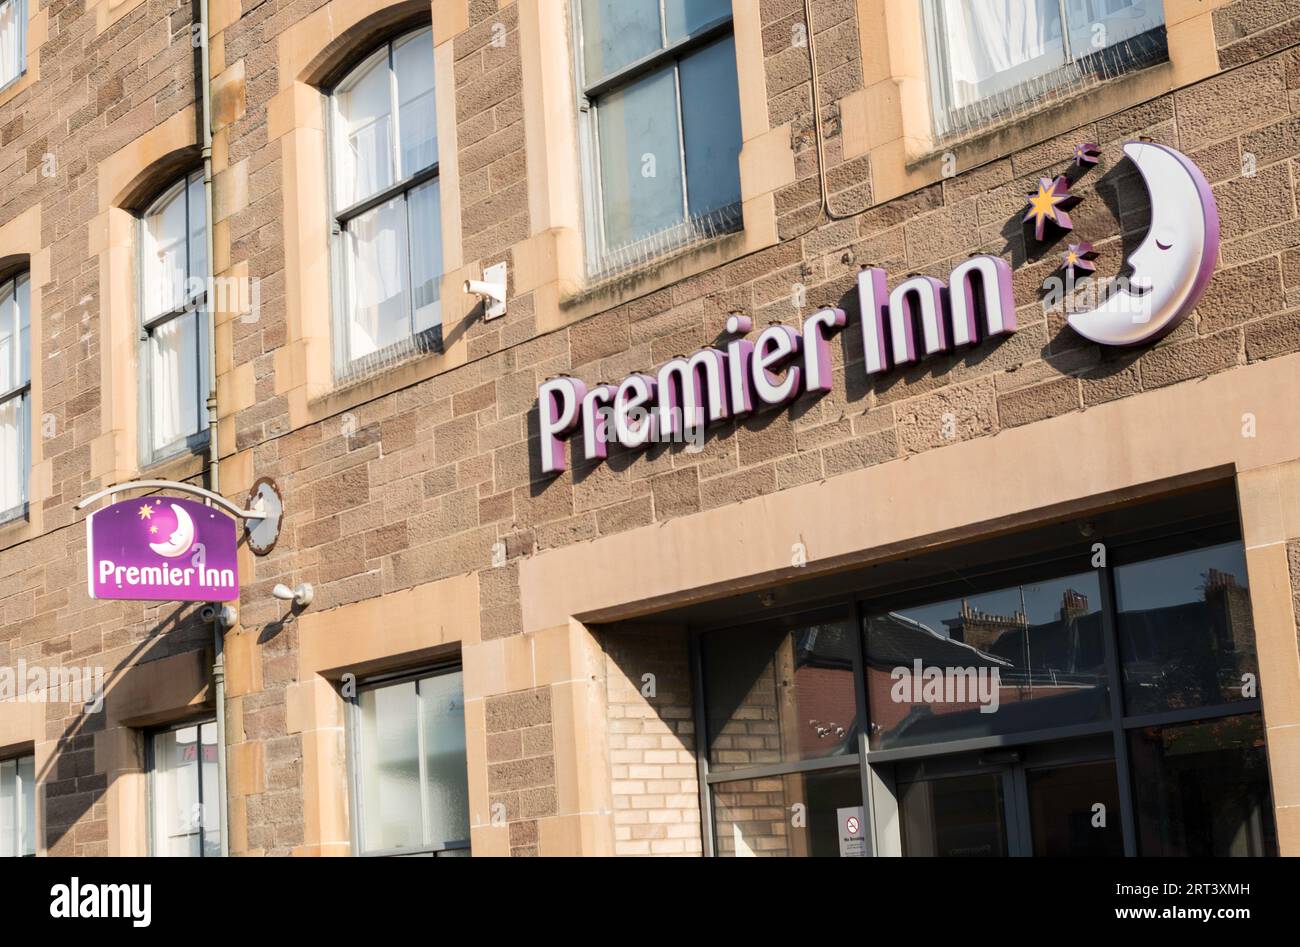 Premier Inn logo Stock Photo